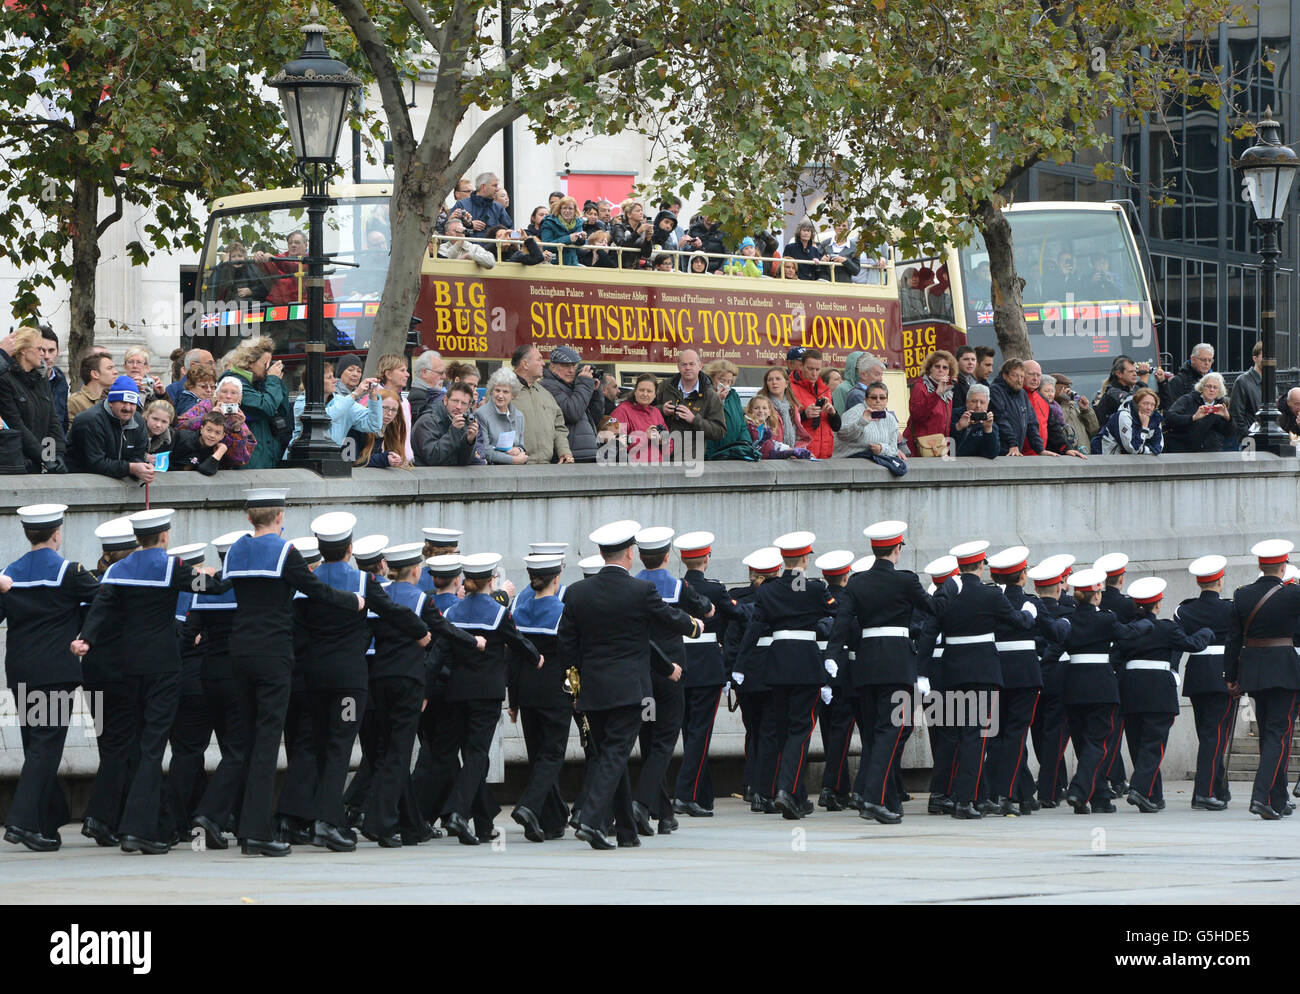 Les cadets arrivent à Trafalgar Square tandis que les cadets de la Marine participent à une parade de la journée de Trafalgar, de Horse Guards Parade à Trafalgar Square à Londres. Banque D'Images